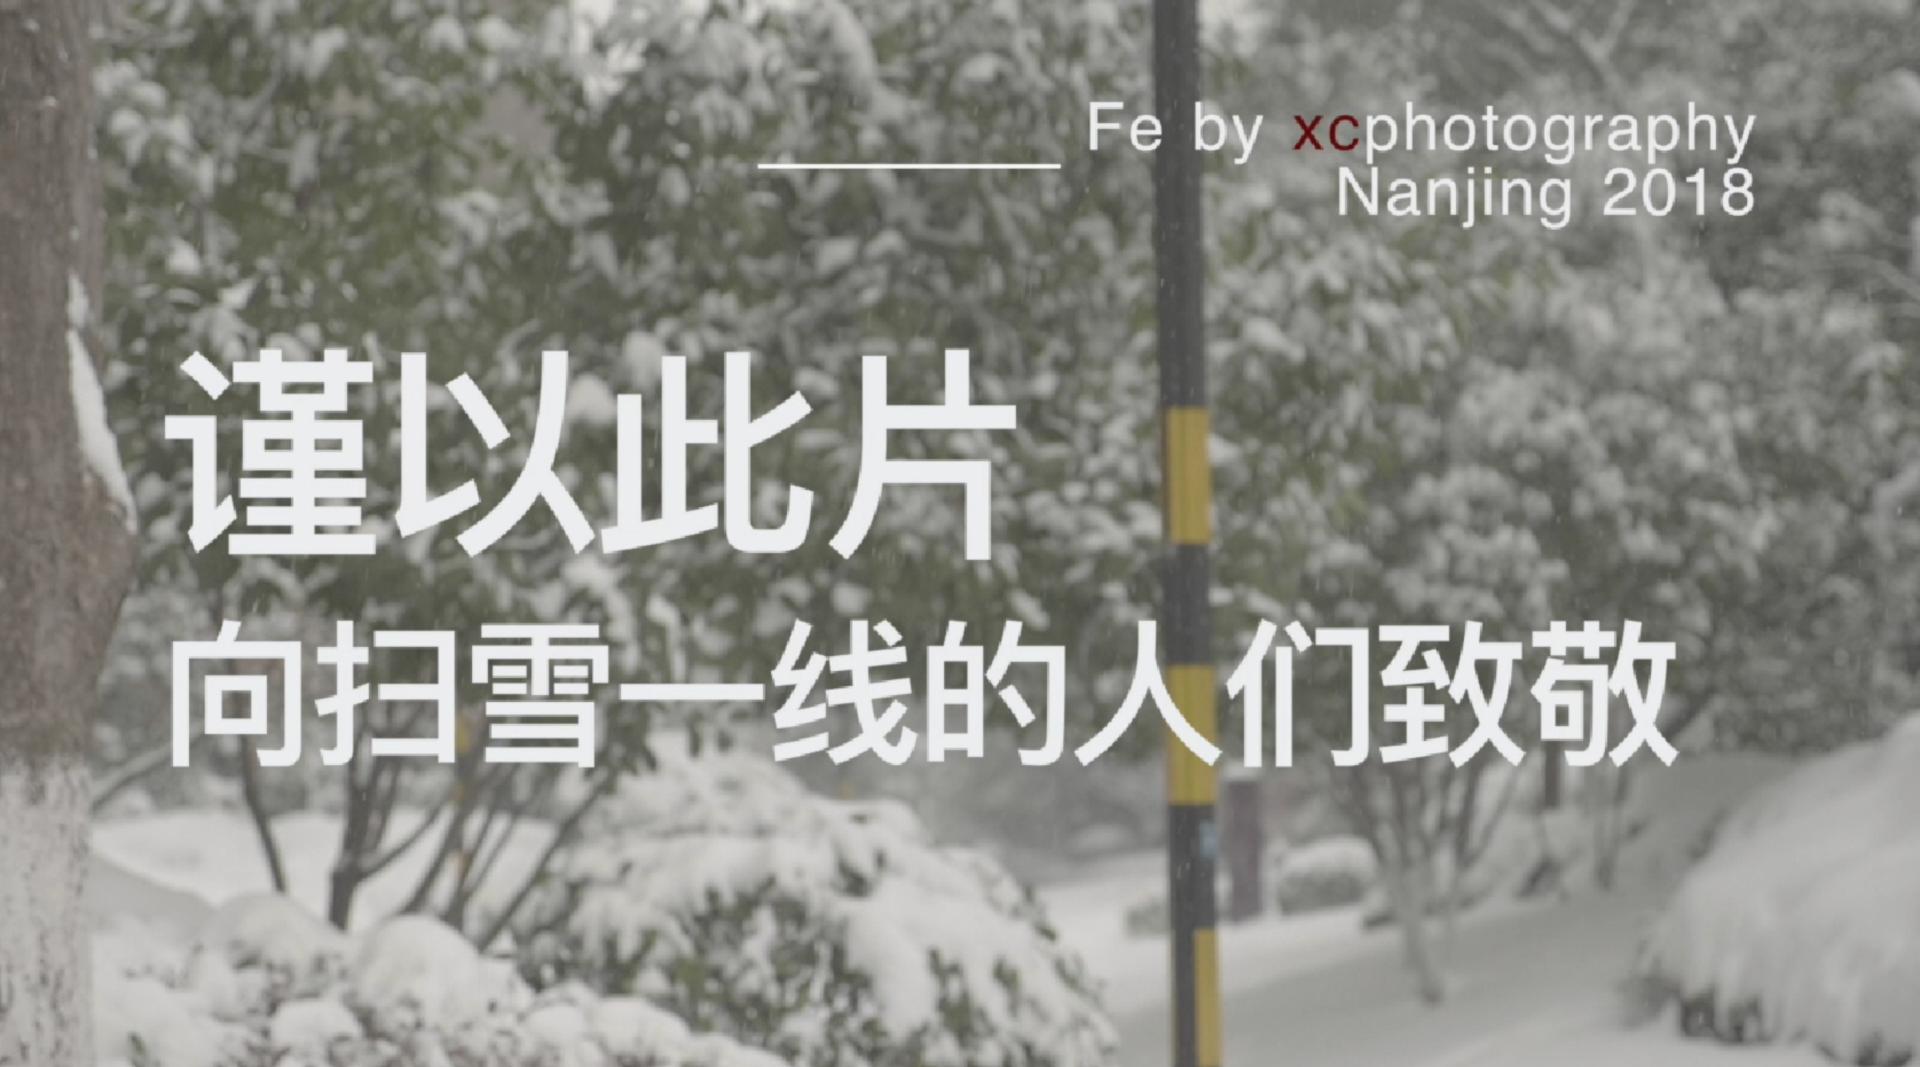 大雪南京2018——扫雪篇